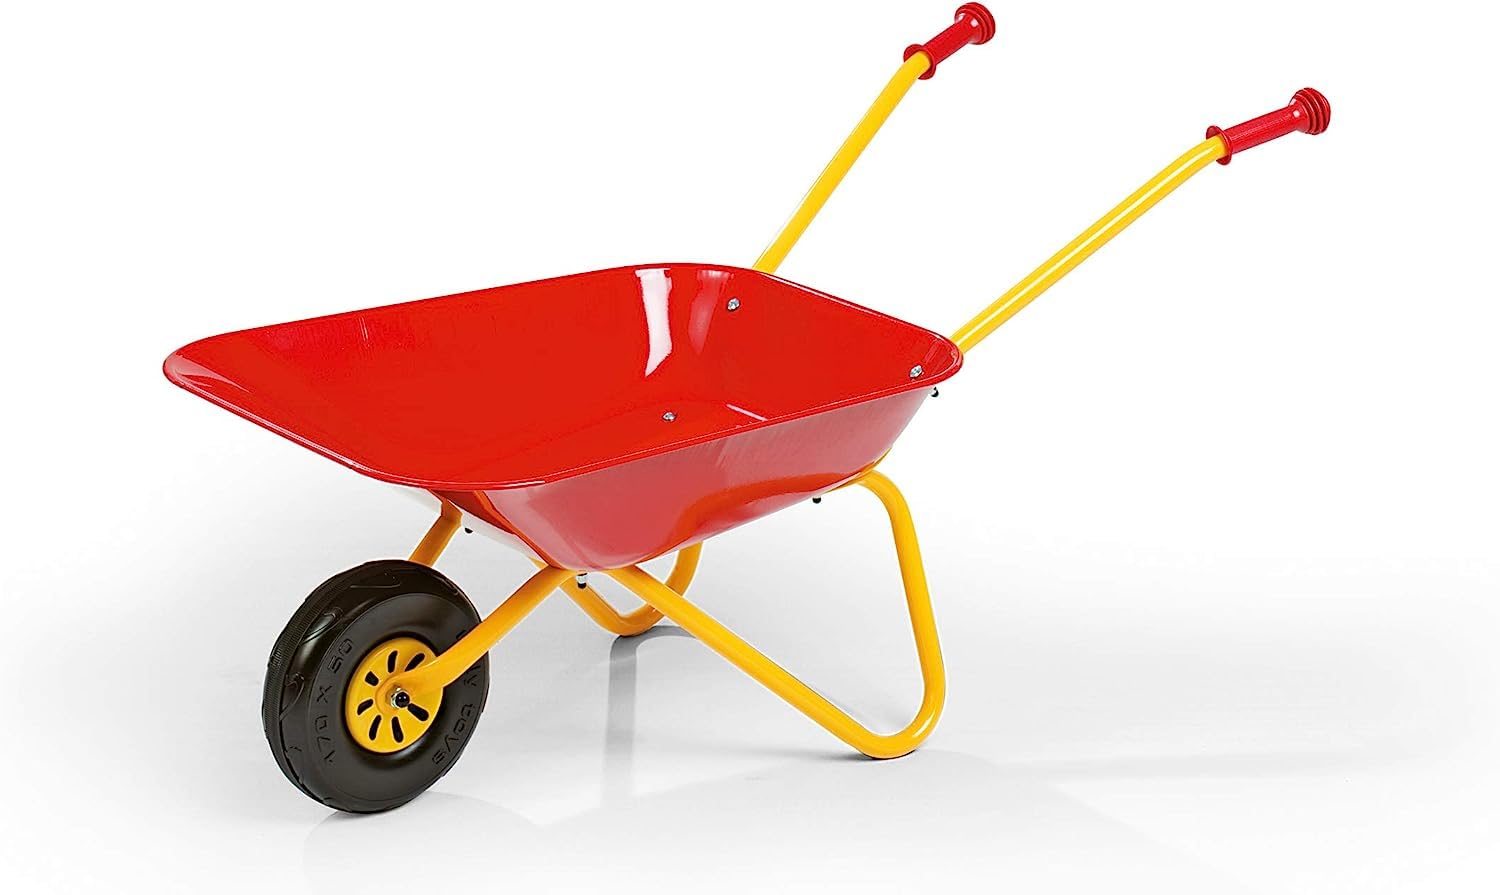 Rolly Toys Kinderschubkarre (Farbe gelb/rot, Gartenschubkarre, Metallschubkarre, Spielzeug für Kinder ab 2,5 Jahren, belastbar bis 25 kg, Gartenwerkzeug für Kinder) 27804